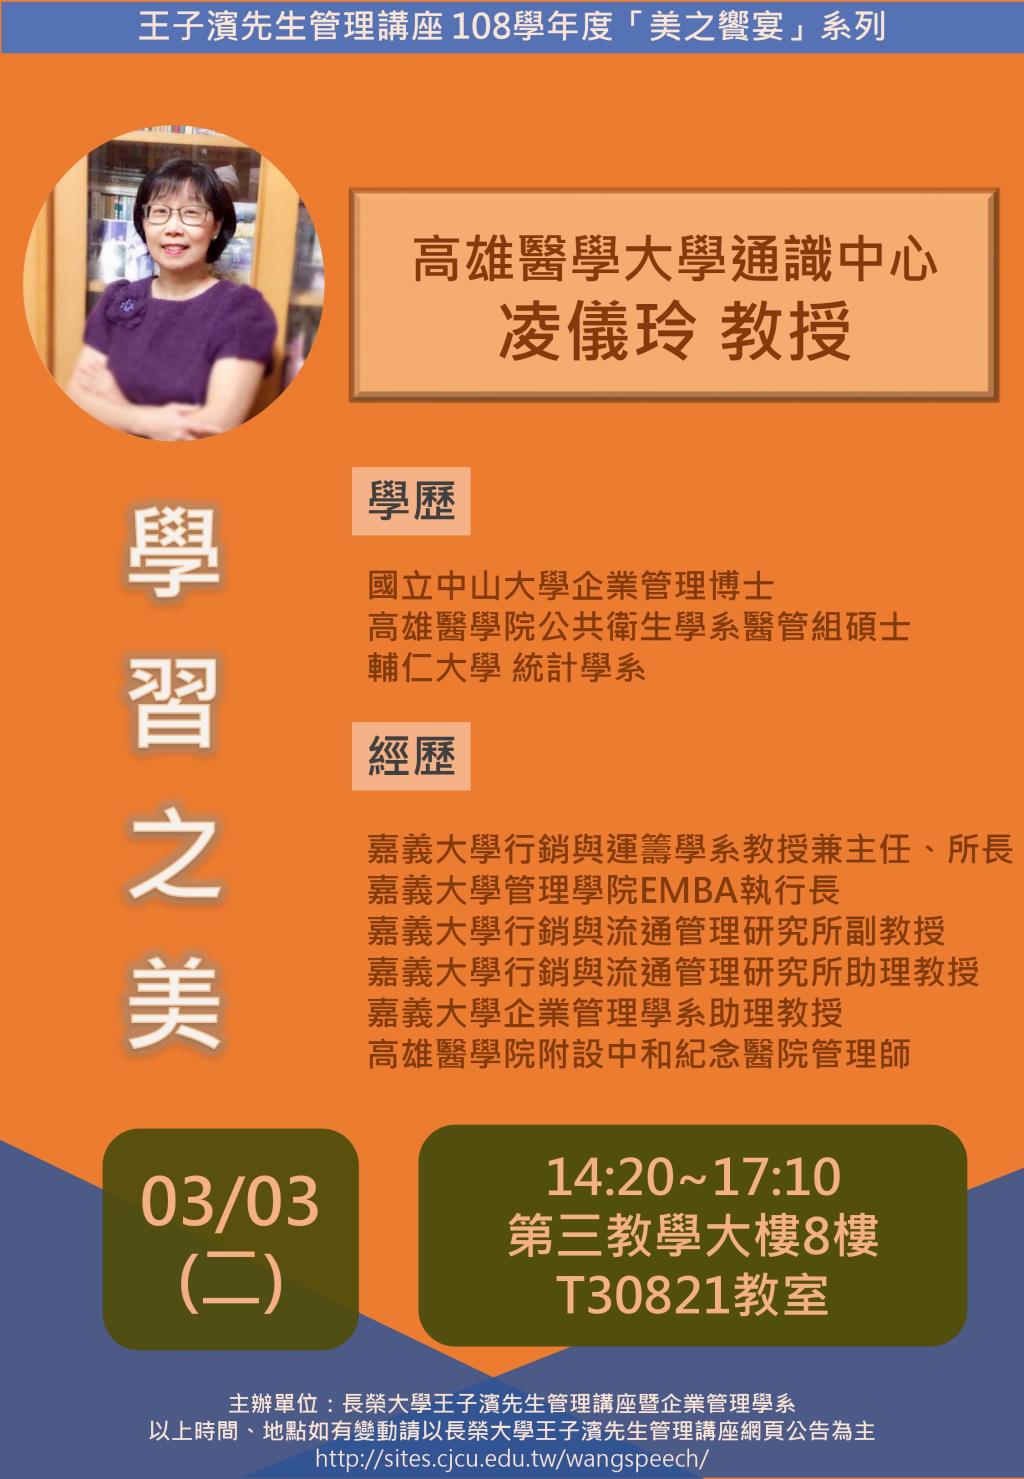 敬邀參加本週二下午(03/03)王子濱先生管理講---學習之美_凌儀玲教授 專題演講